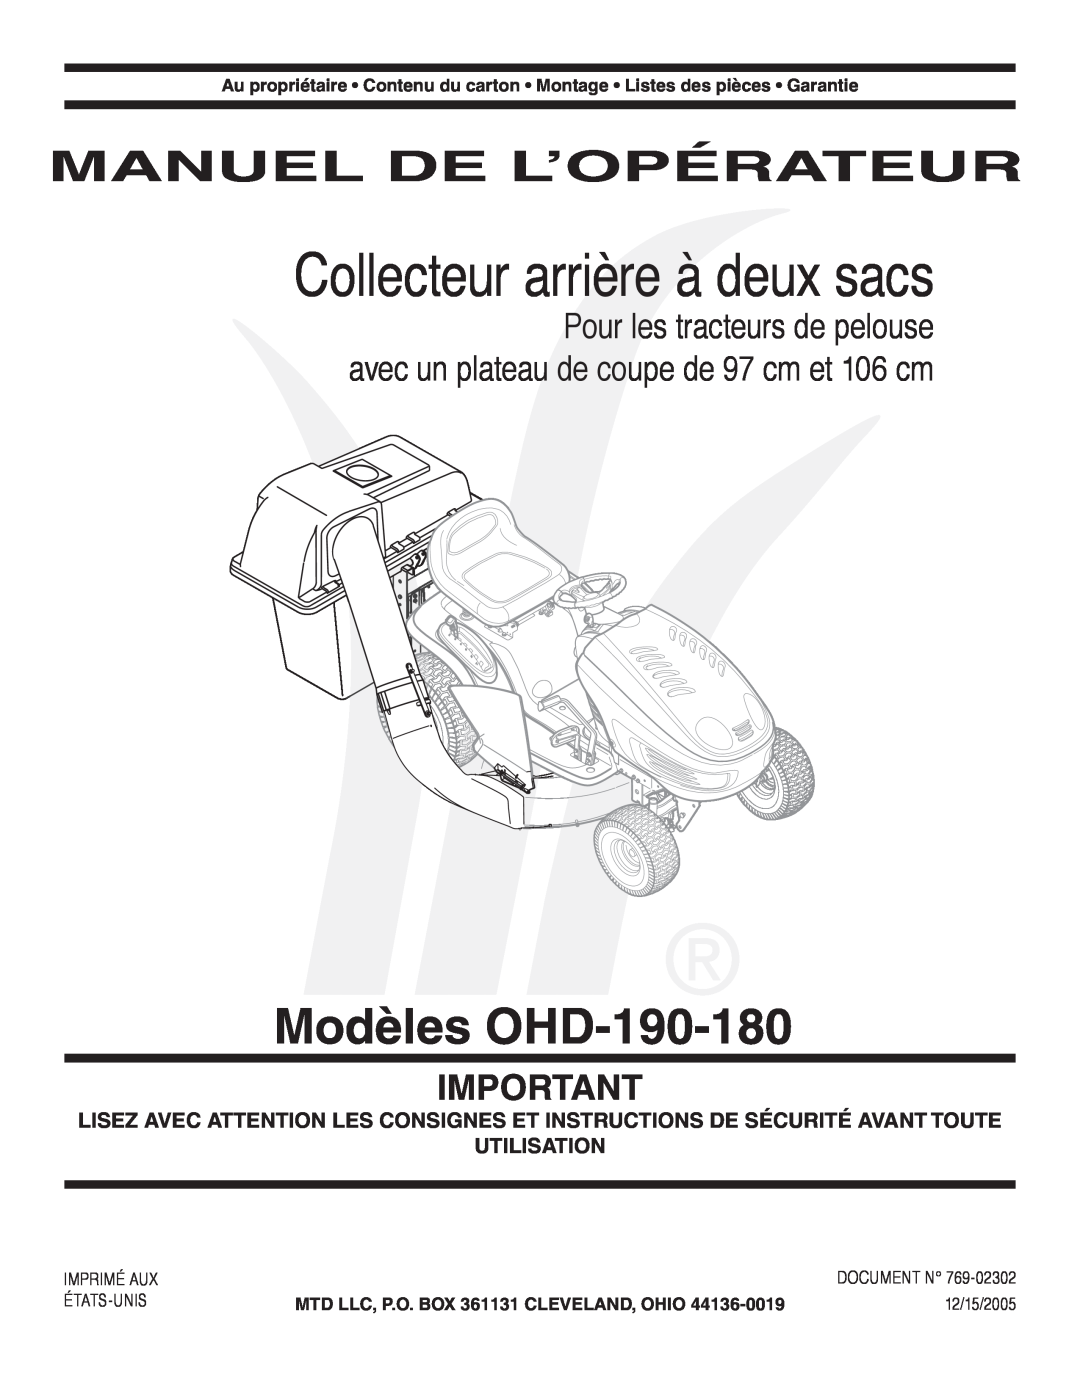 MTD OHD 190-180 Collecteur arrière à deux sacs, Modèles OHD-190-180, Manuel De L’Opérateur, Imprimé Aux, États-Unis 